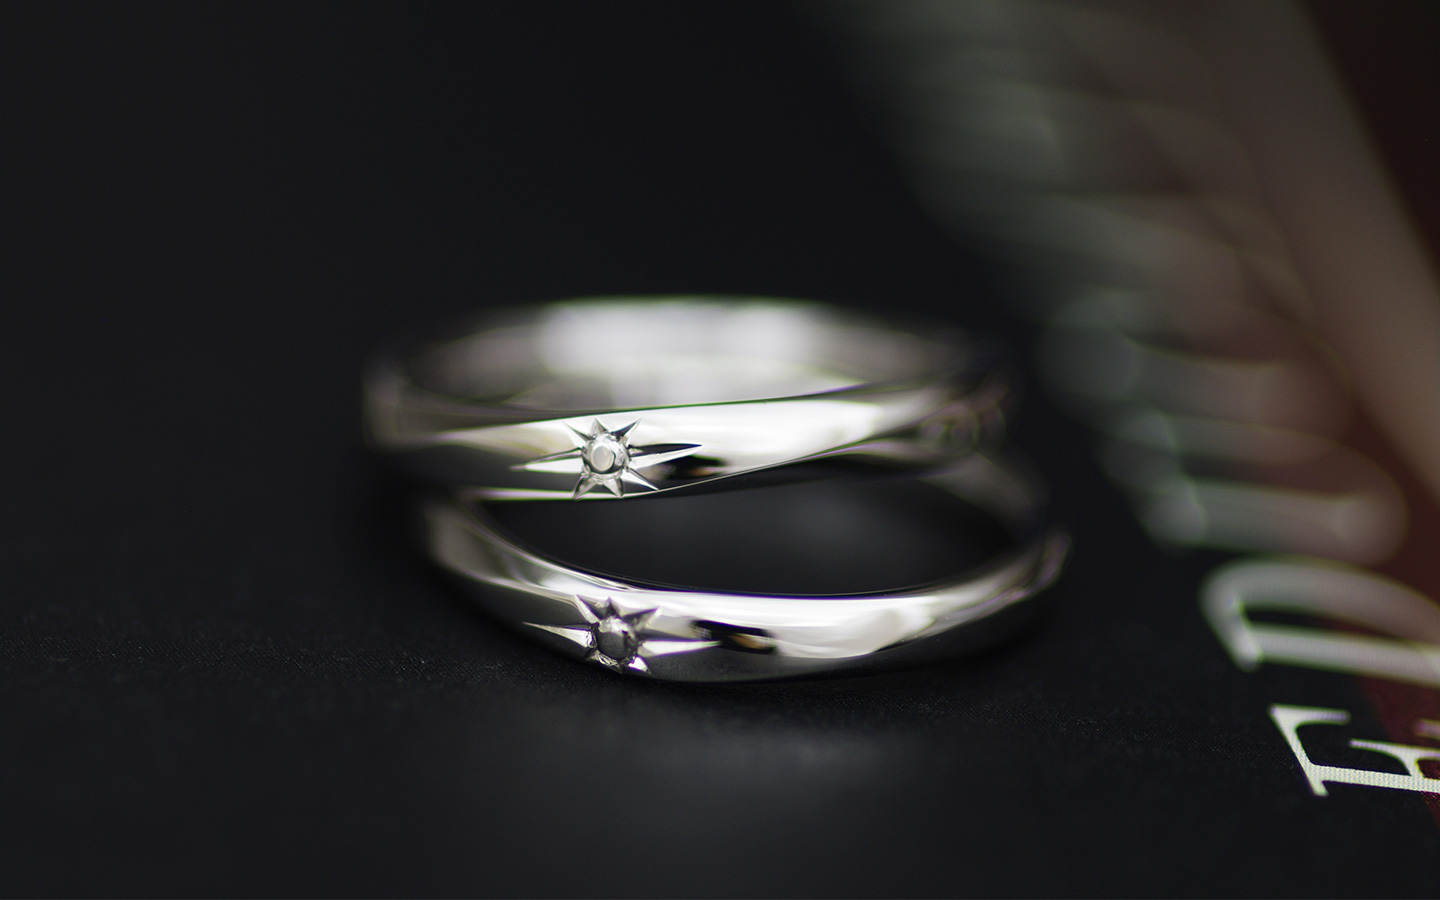 サンマークが彫刻されたかっこいい結婚指輪